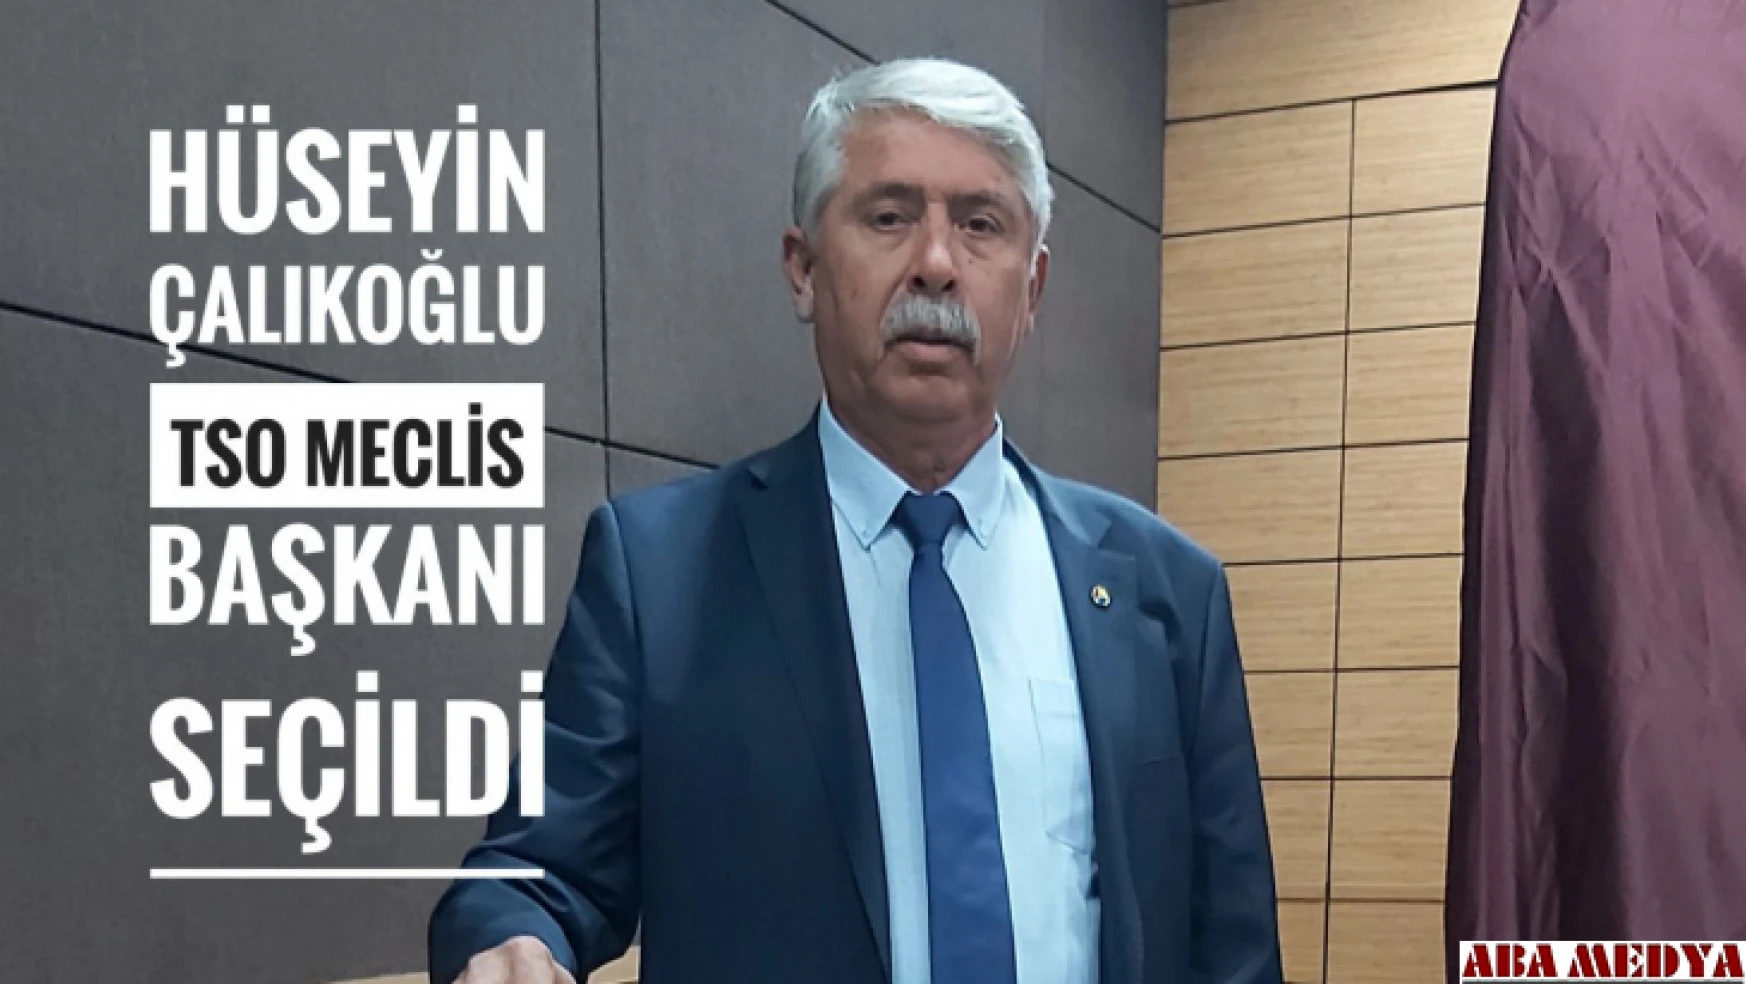 Hüseyin Çalıkoğlu TSO Meclis Başkanı seçildi